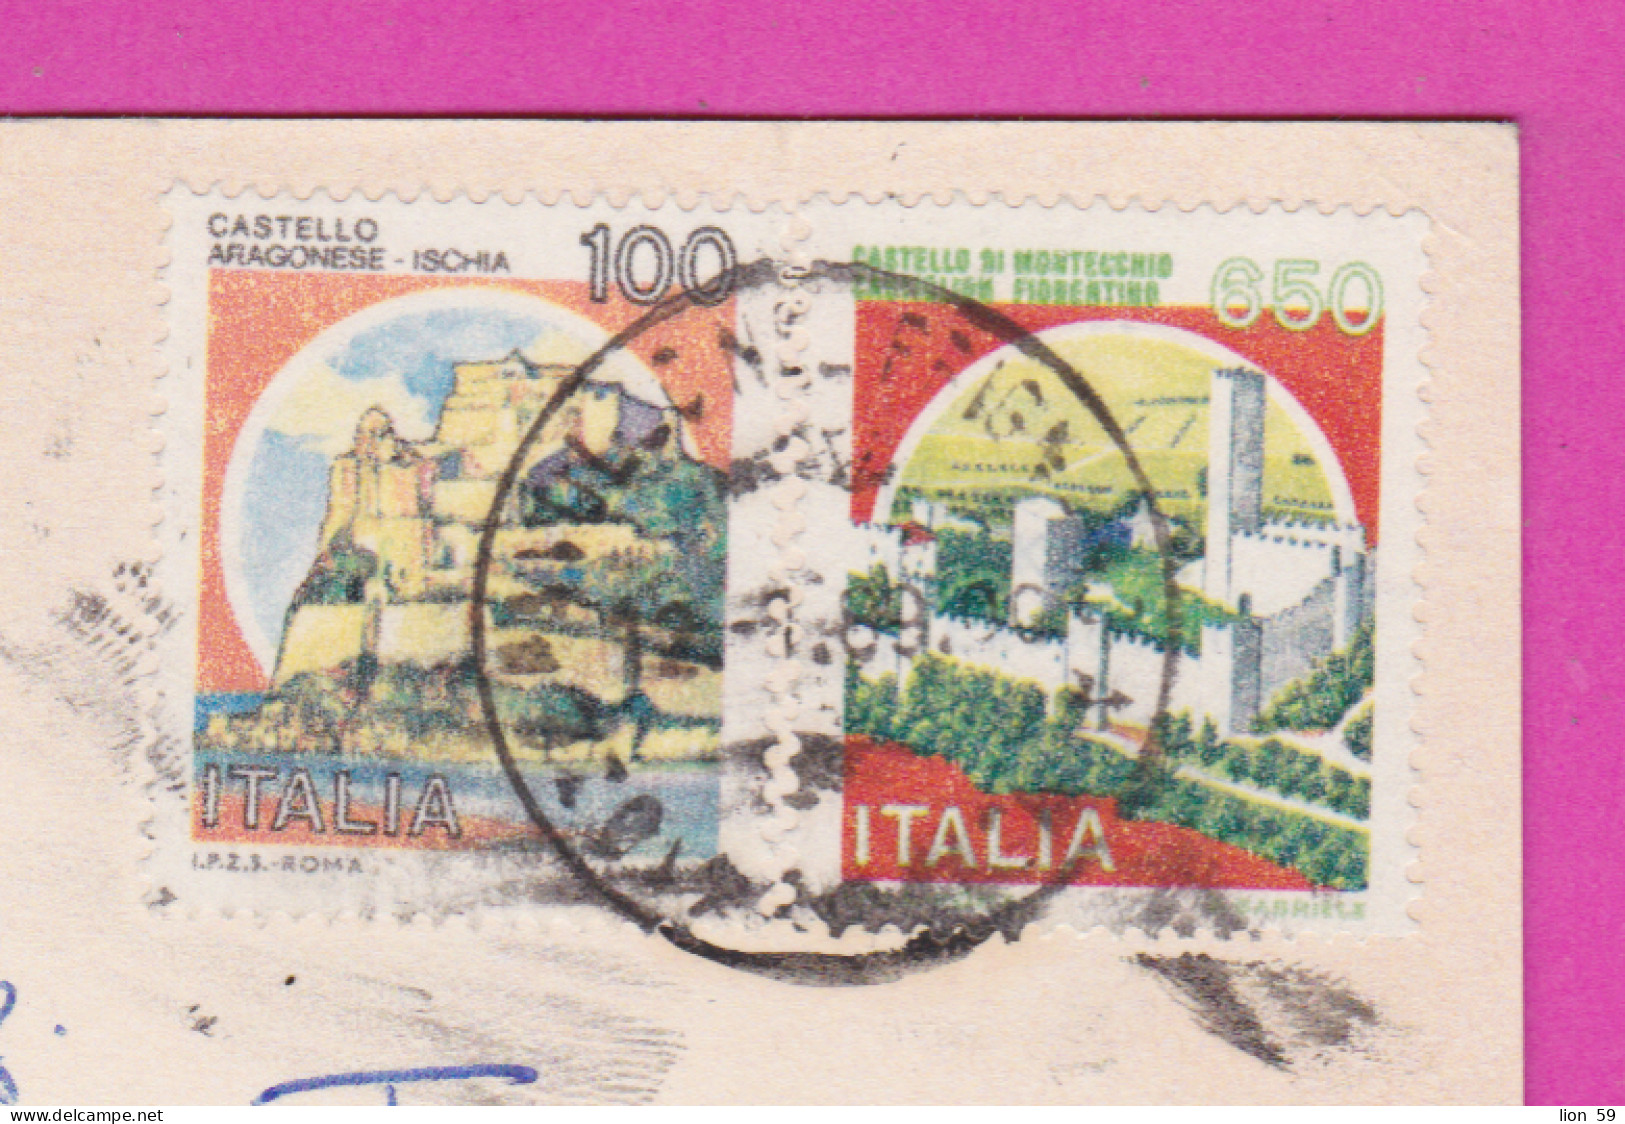 293834 / Italy - Pavullo Nel Frignano M. 686 S.m. PC 1989 USED 100+650 L Castello Di Montecchio, Castiglion Fiorentino - 1981-90: Marcophilie